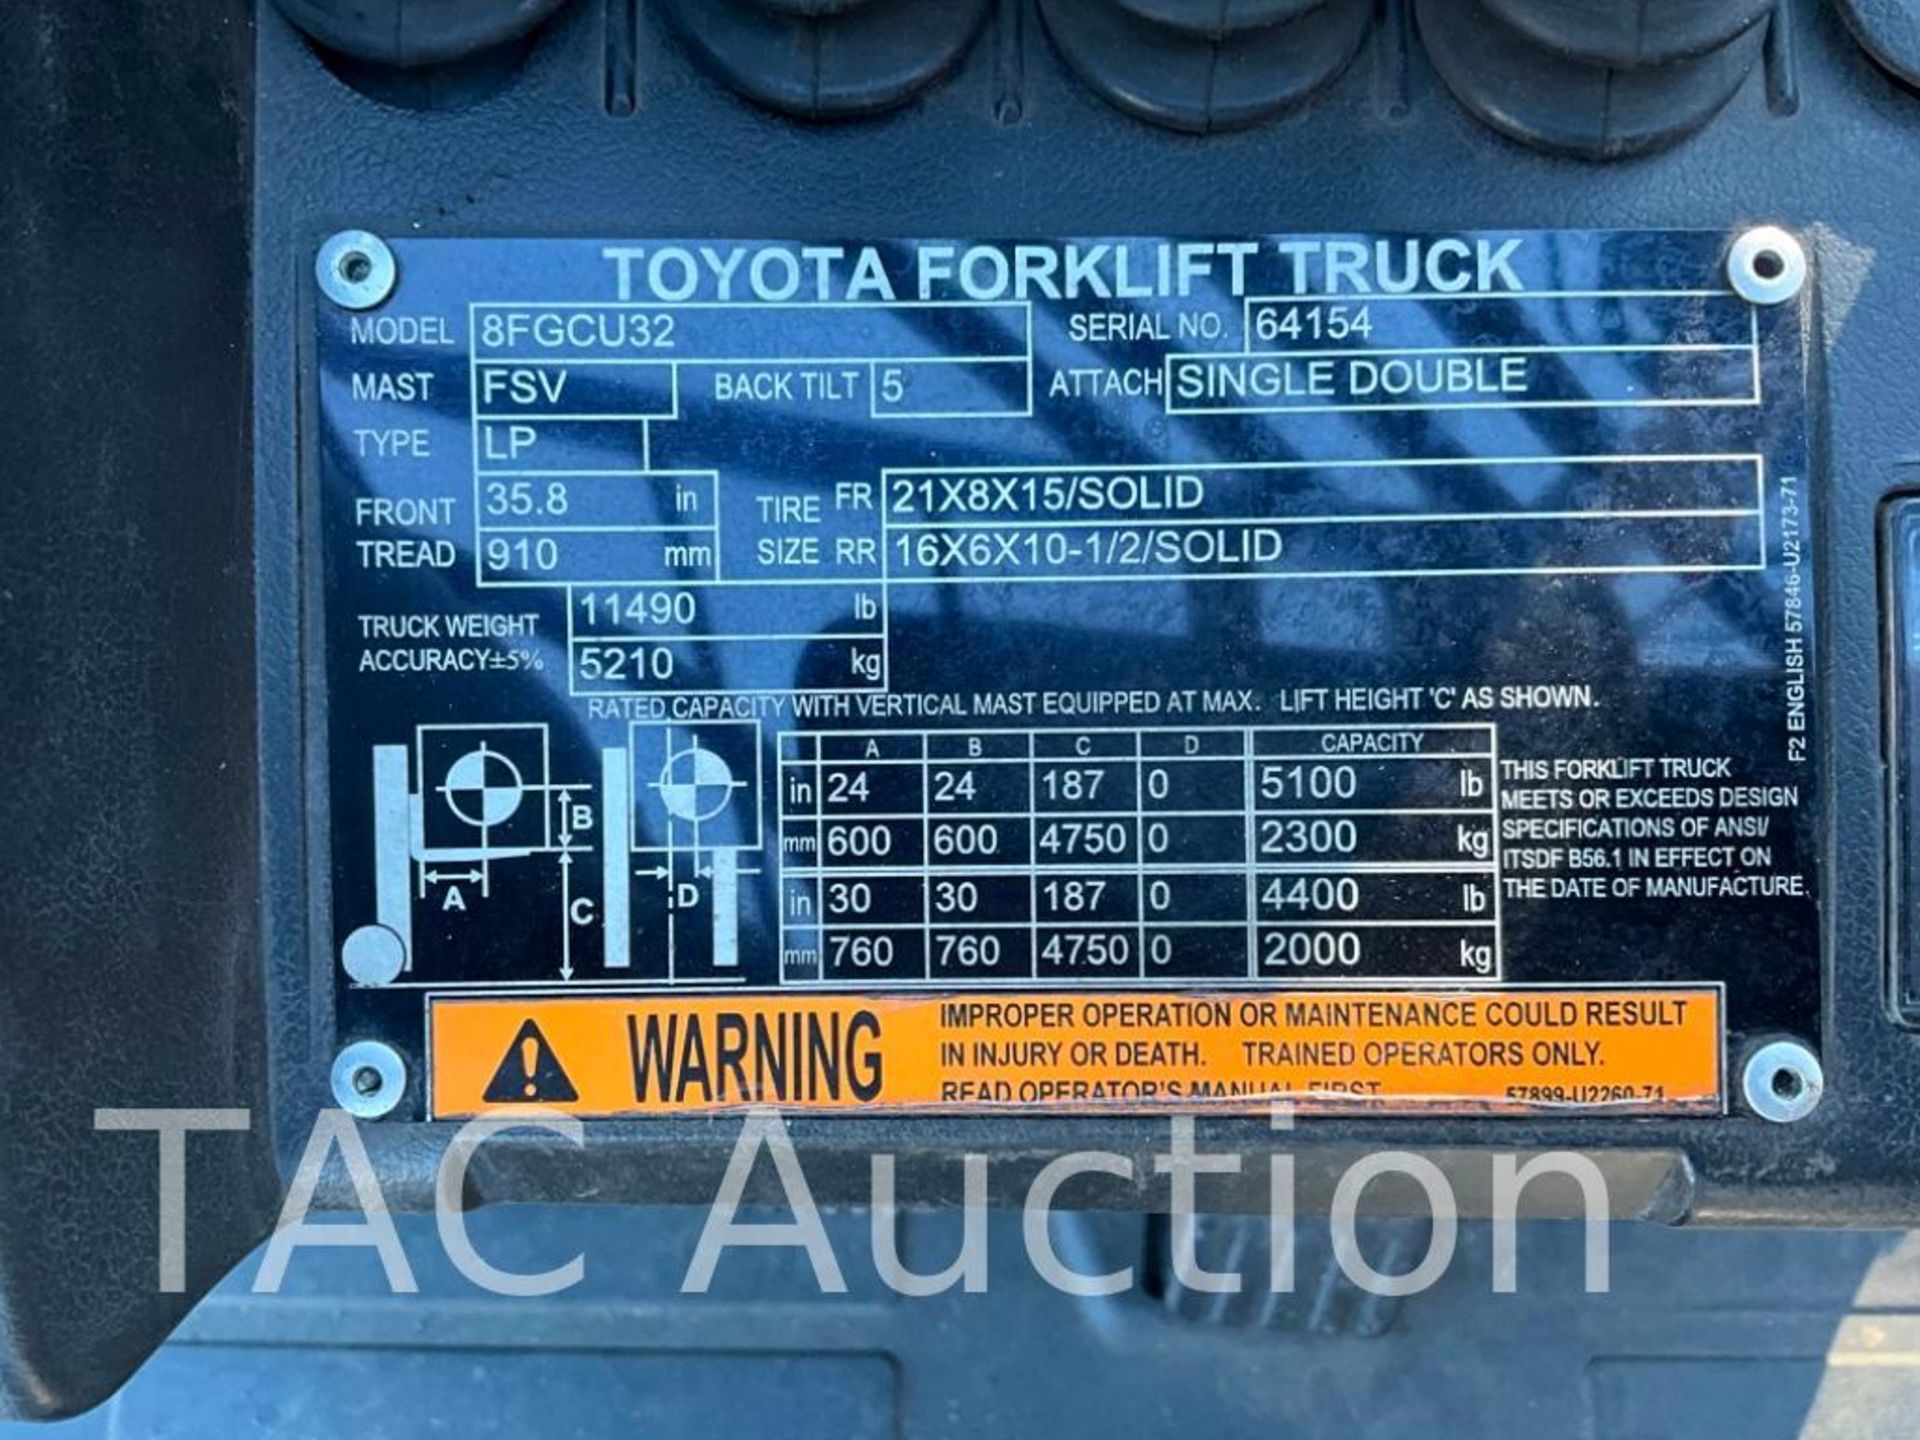 2015 Toyota 8FGCU32 6500lb Forklift - Image 28 of 28